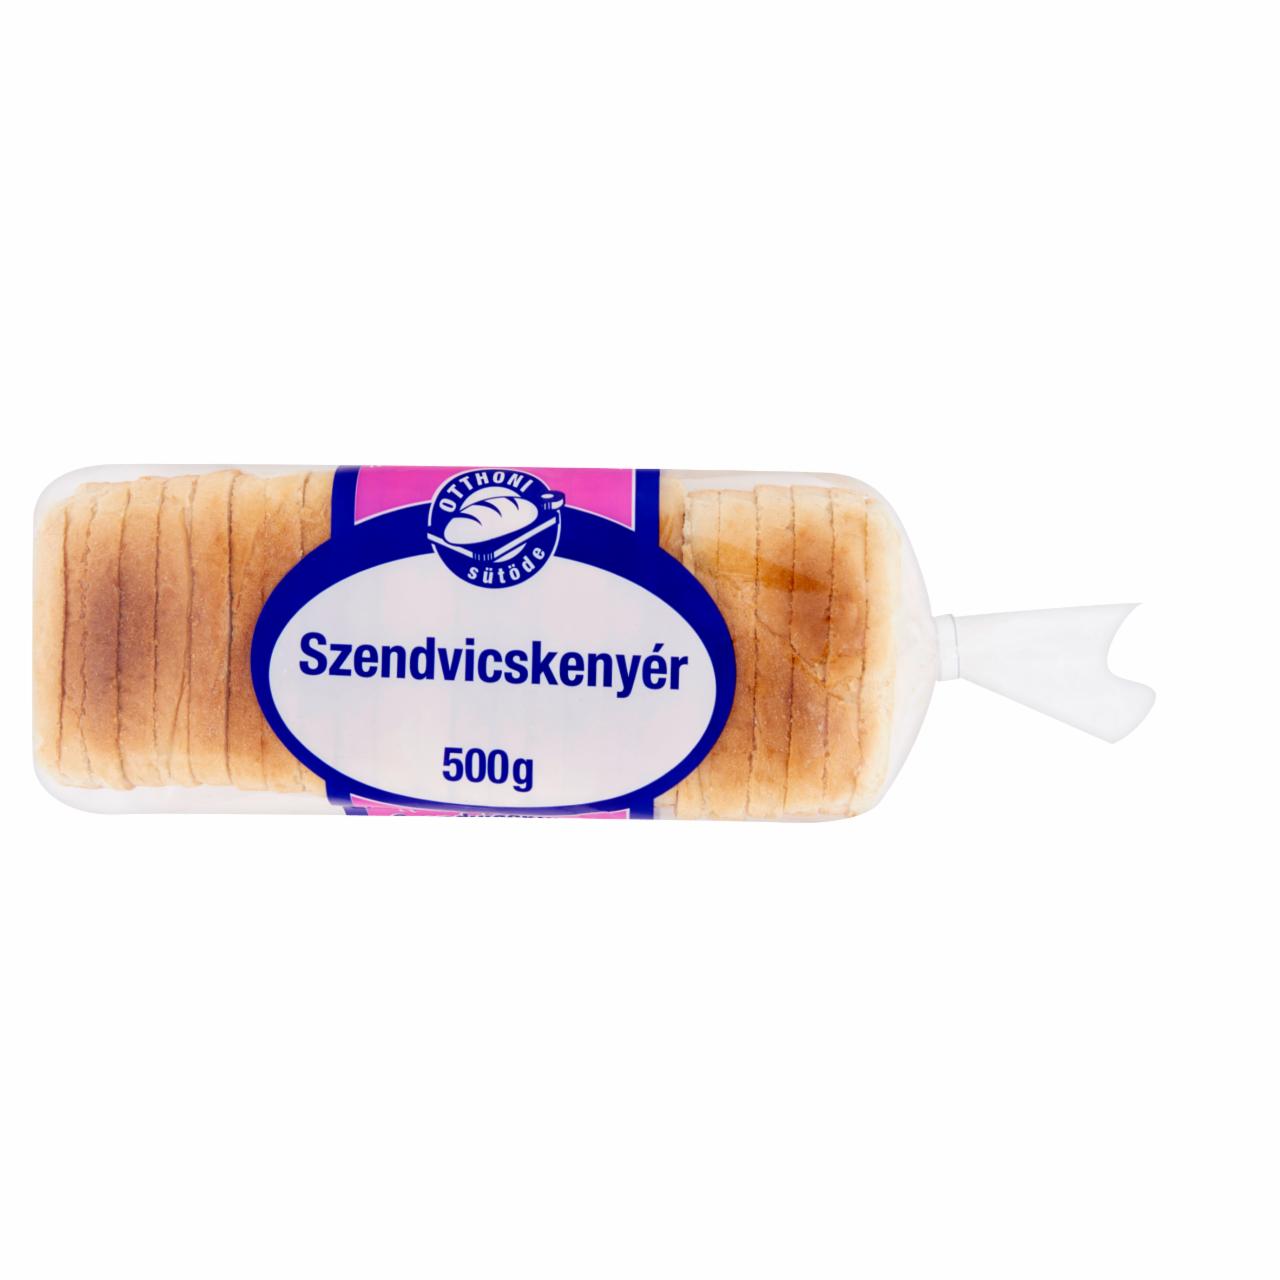 Képek - Otthoni Sütöde szendvicskenyér 500 g